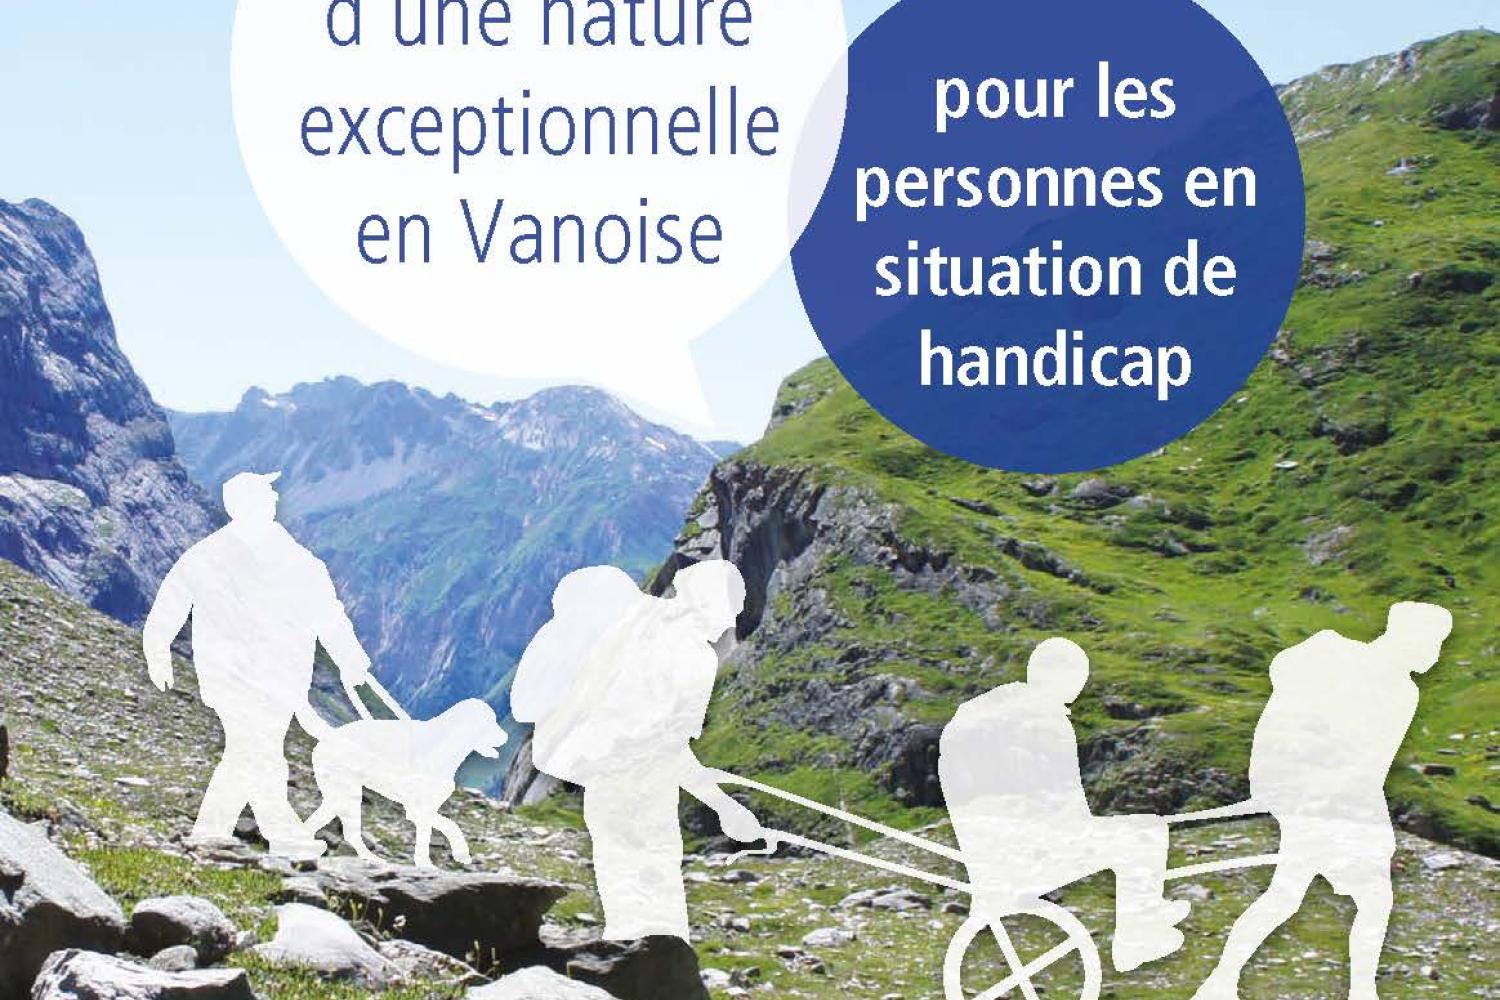 bd_pnv_couv_brochure_decouverte_d_une_nature_exceptionnelle_en_vanoise_c_dr_parc_national_de_la_vanoise.jpg